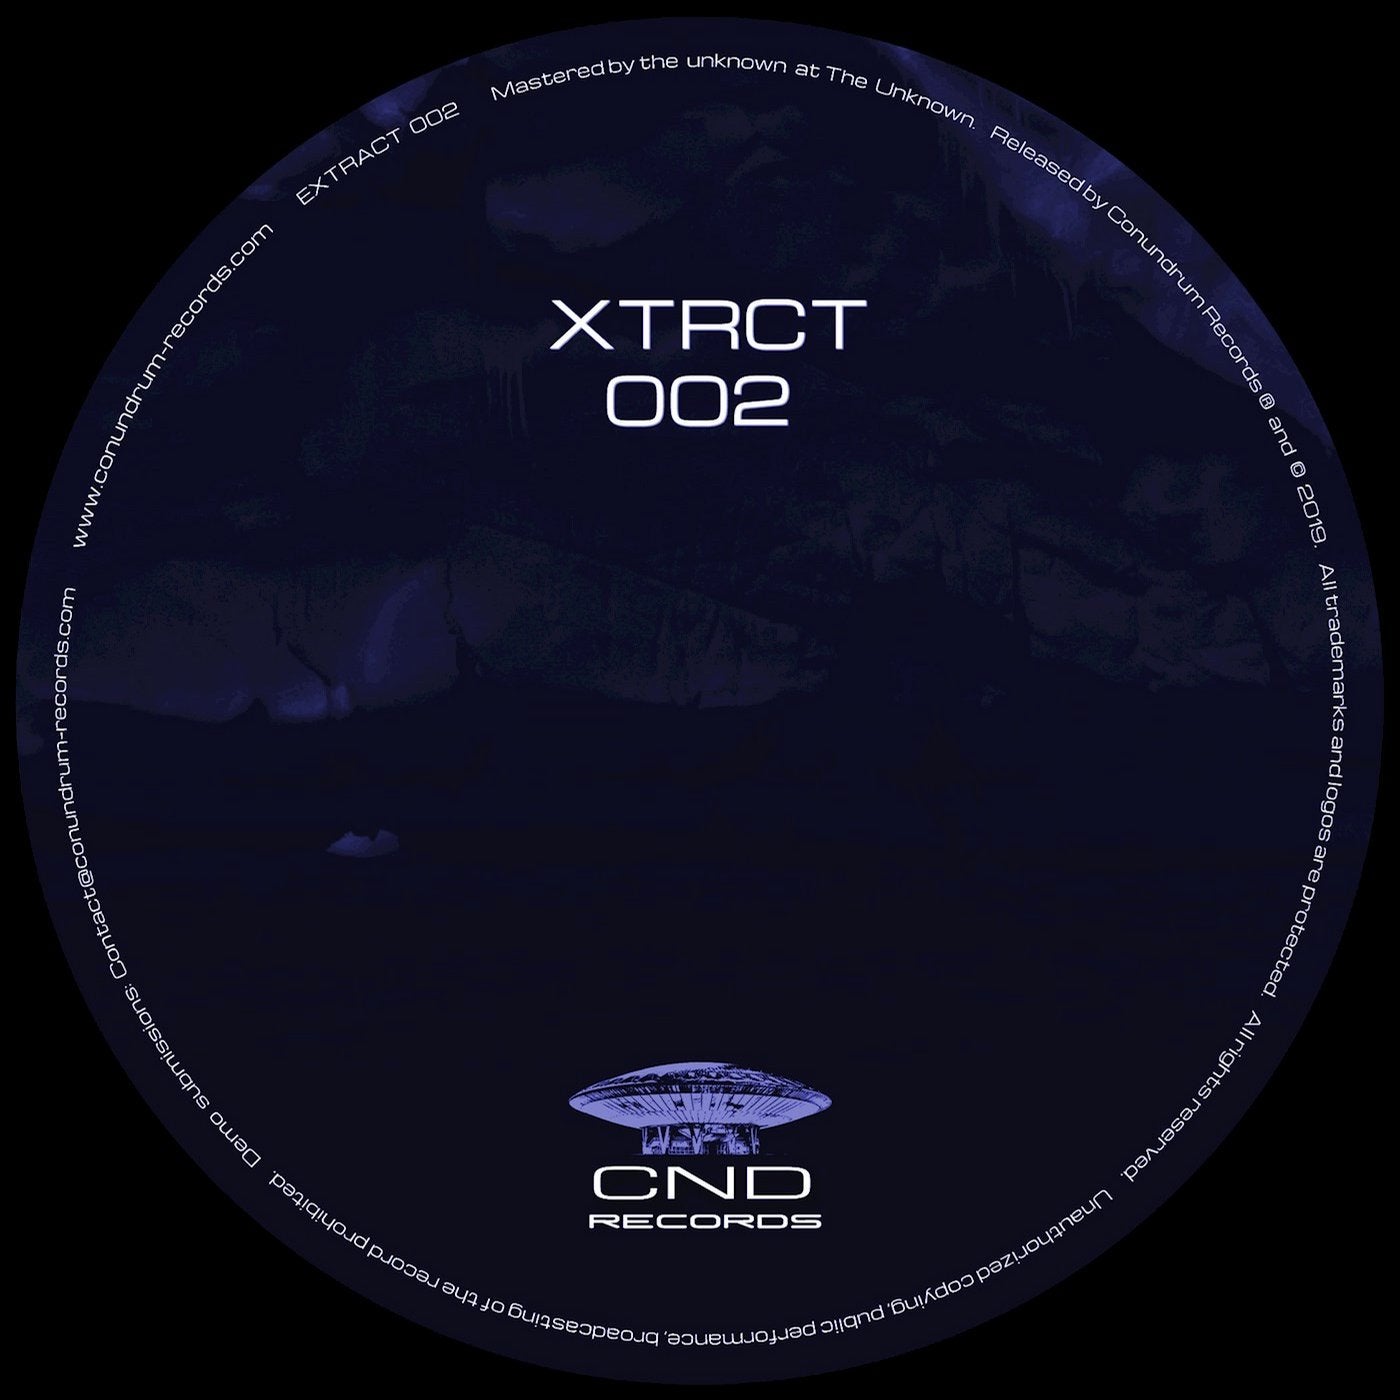 XTRCT 002